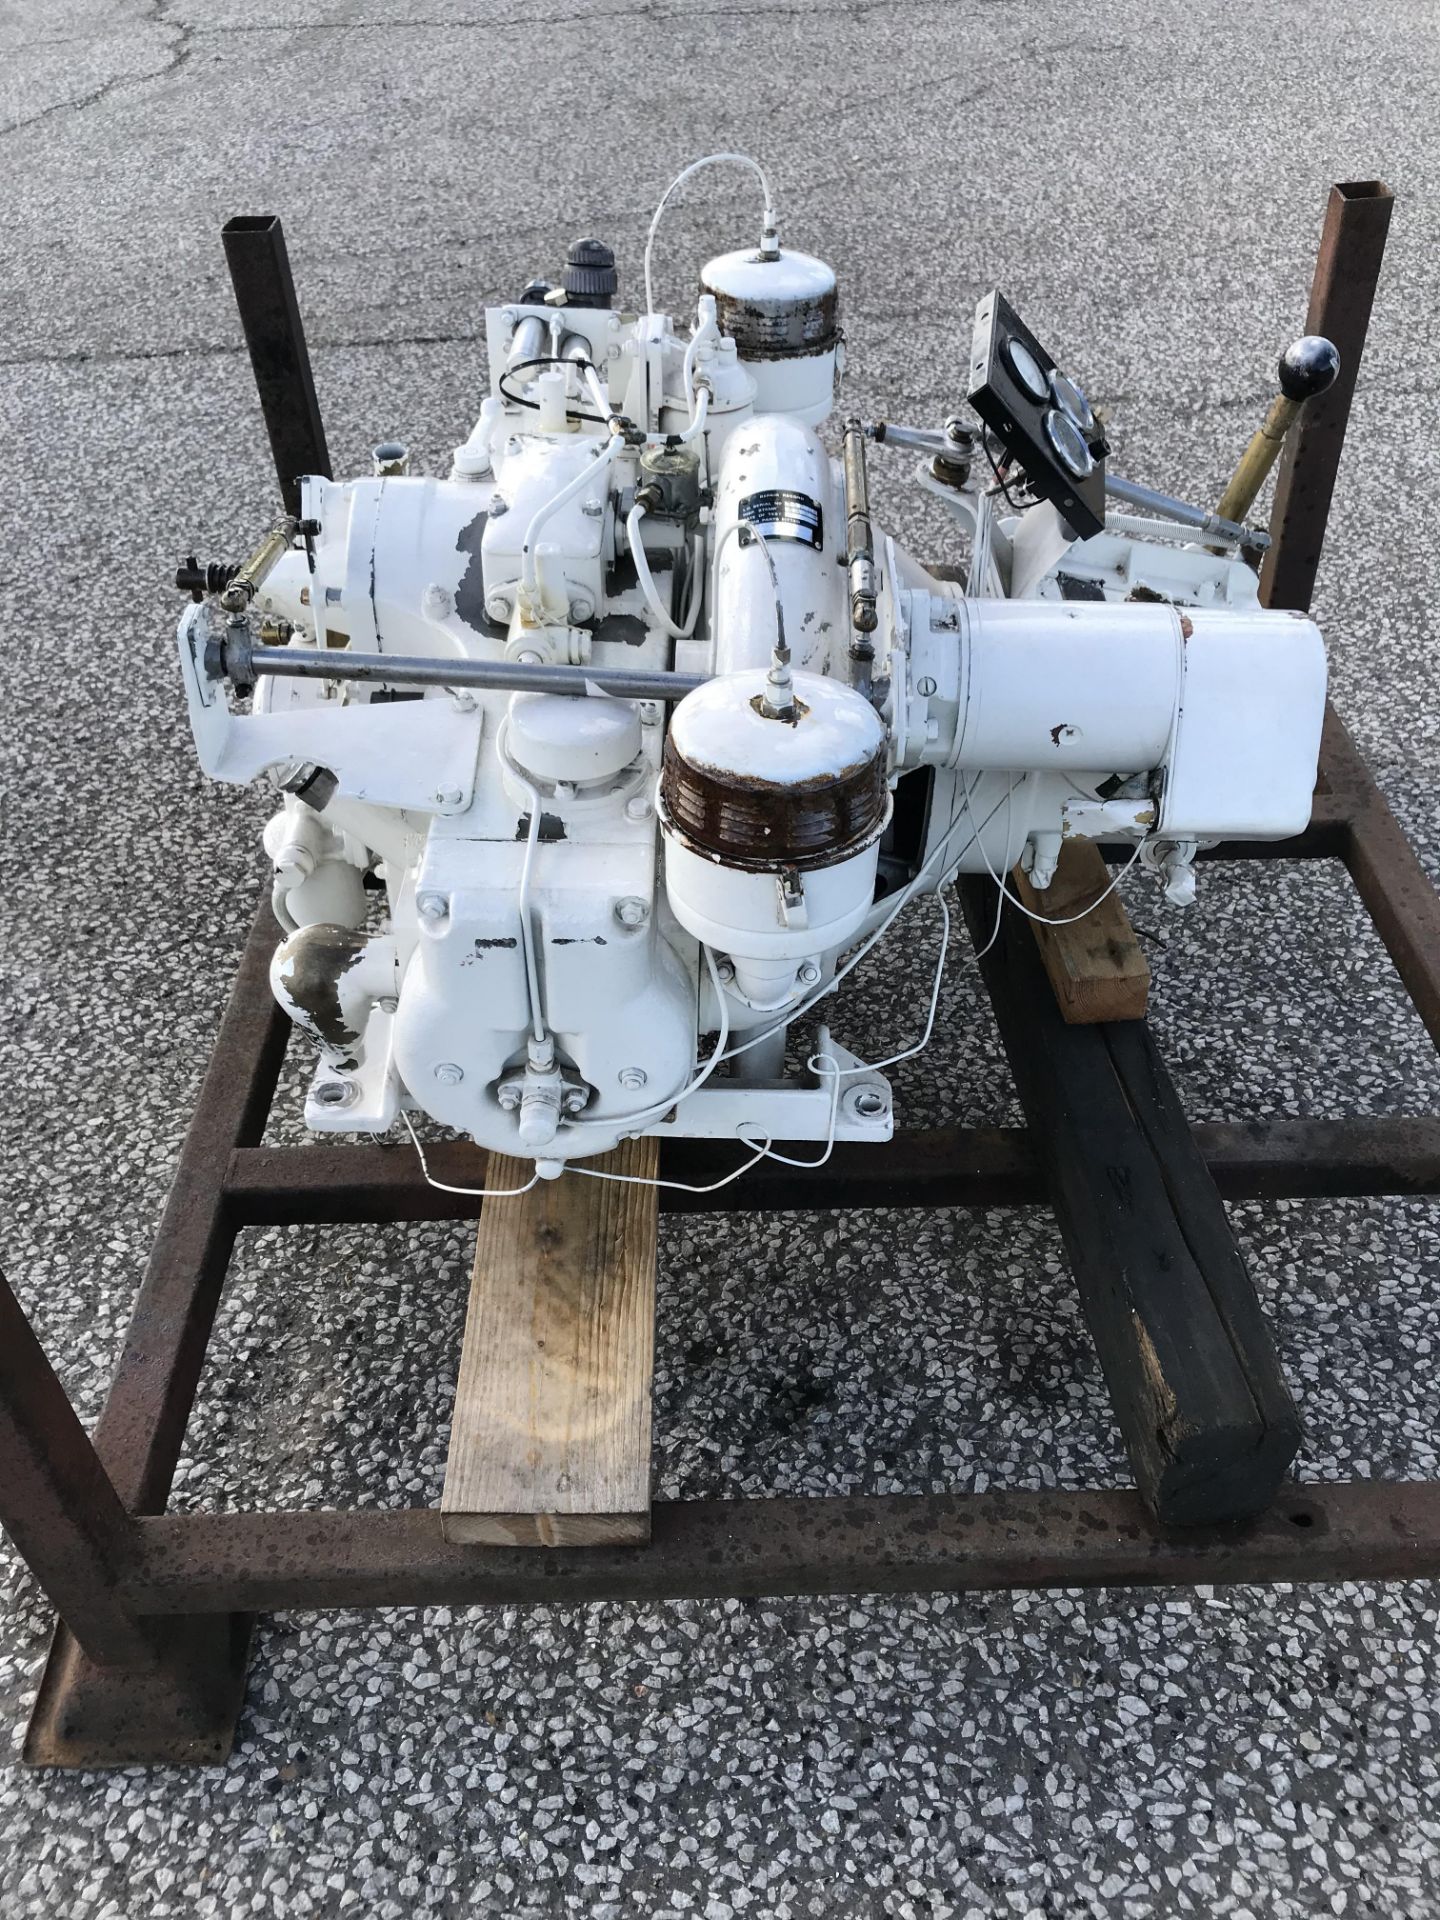 Enfield Ho2 Marine Diesel Engine Unused - Image 3 of 6